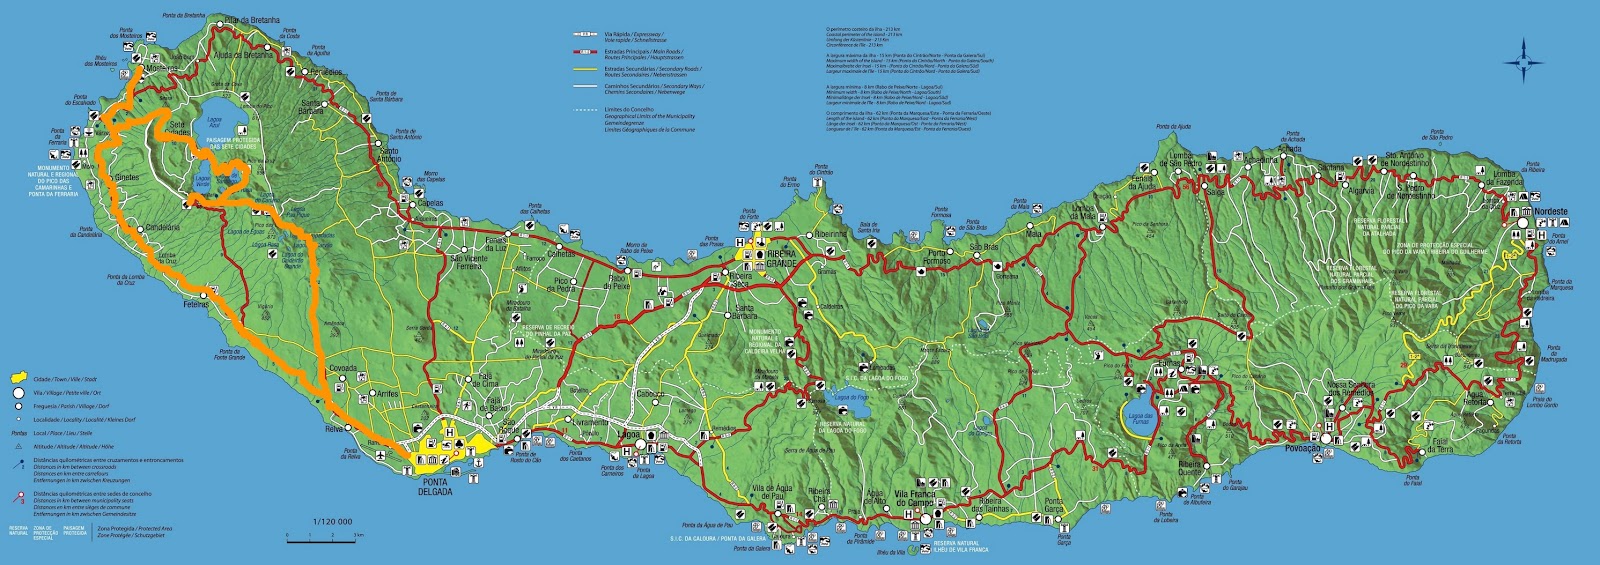 Ilha de São Miguel Açores Portugal mapa político - Fotos de arquivo  #30752333